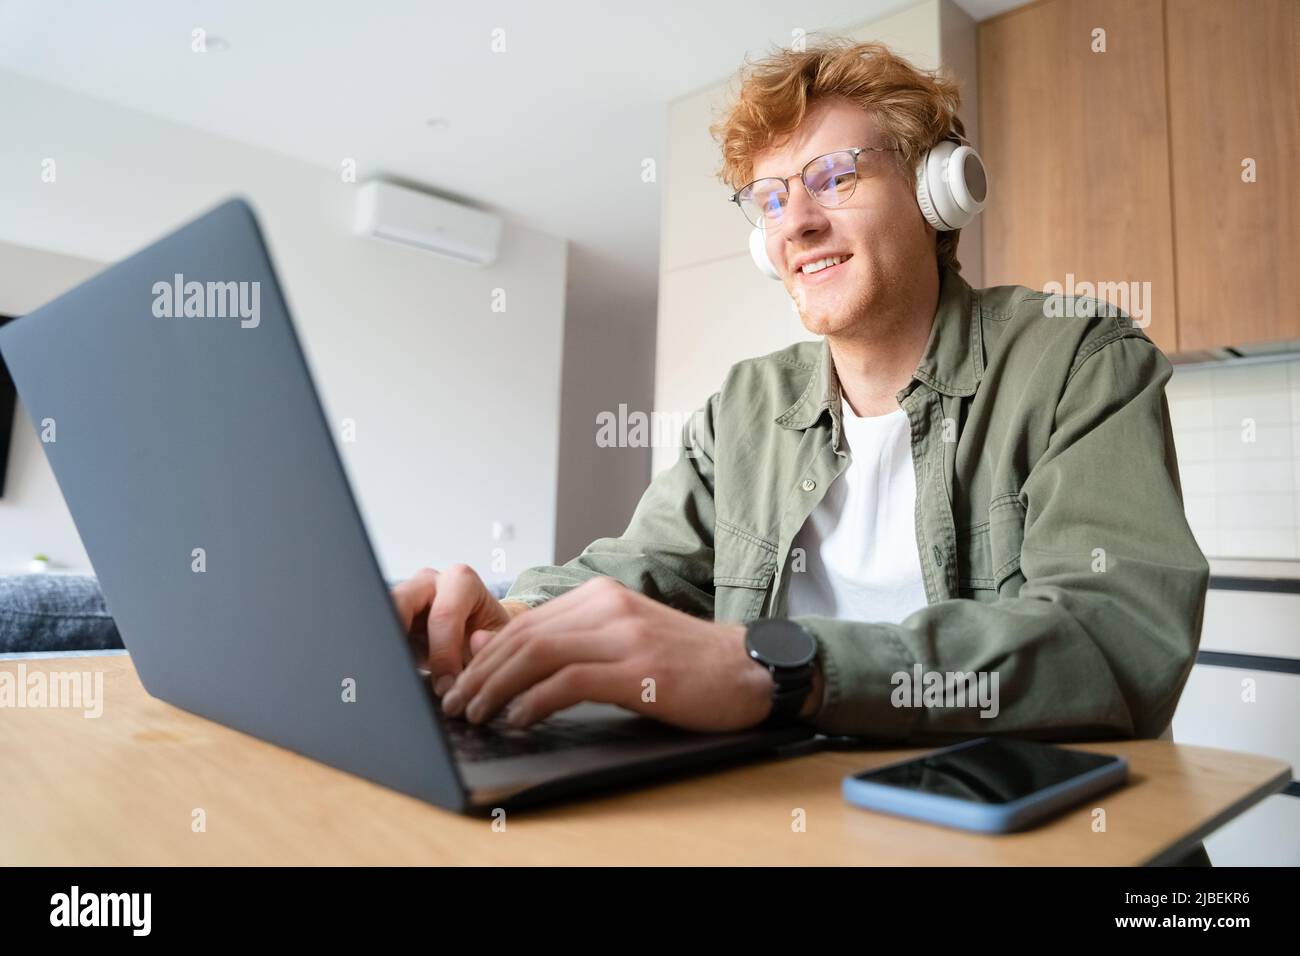 Jeune Ginger homme joueur jouant à des jeux vidéo, faisant des jeux vidéo d'affaires sur ordinateur portable Banque D'Images